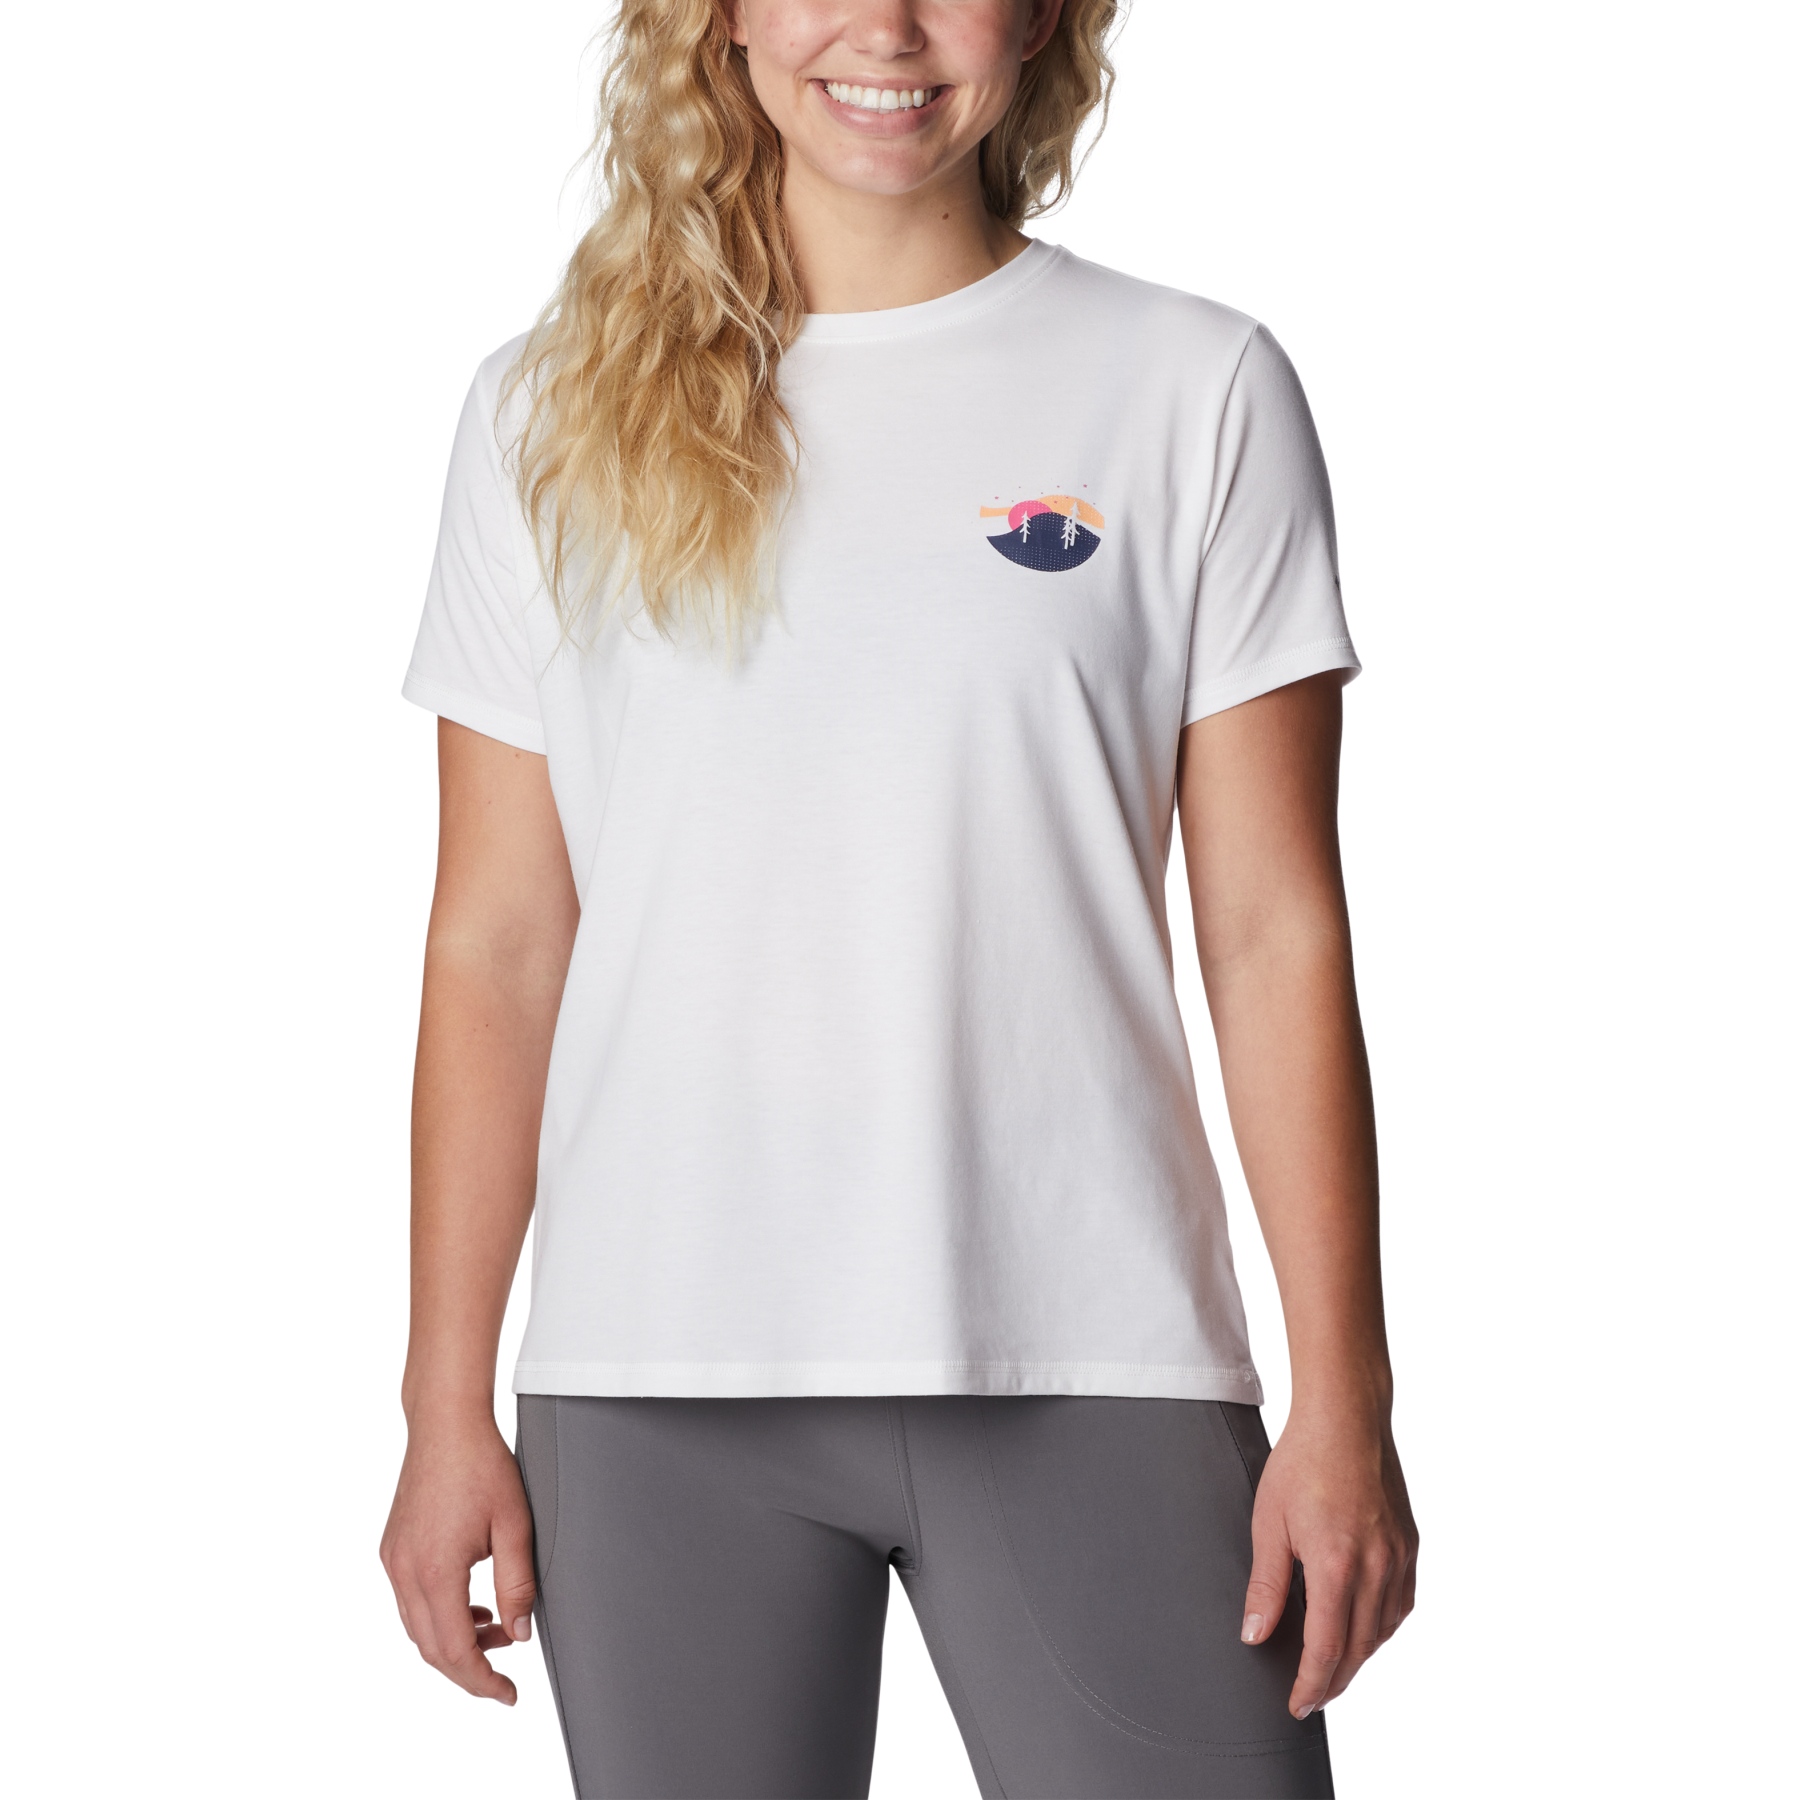 Produktbild von Columbia Sun Trek Graphic T-Shirt II Damen - White/Night Sky Graphic